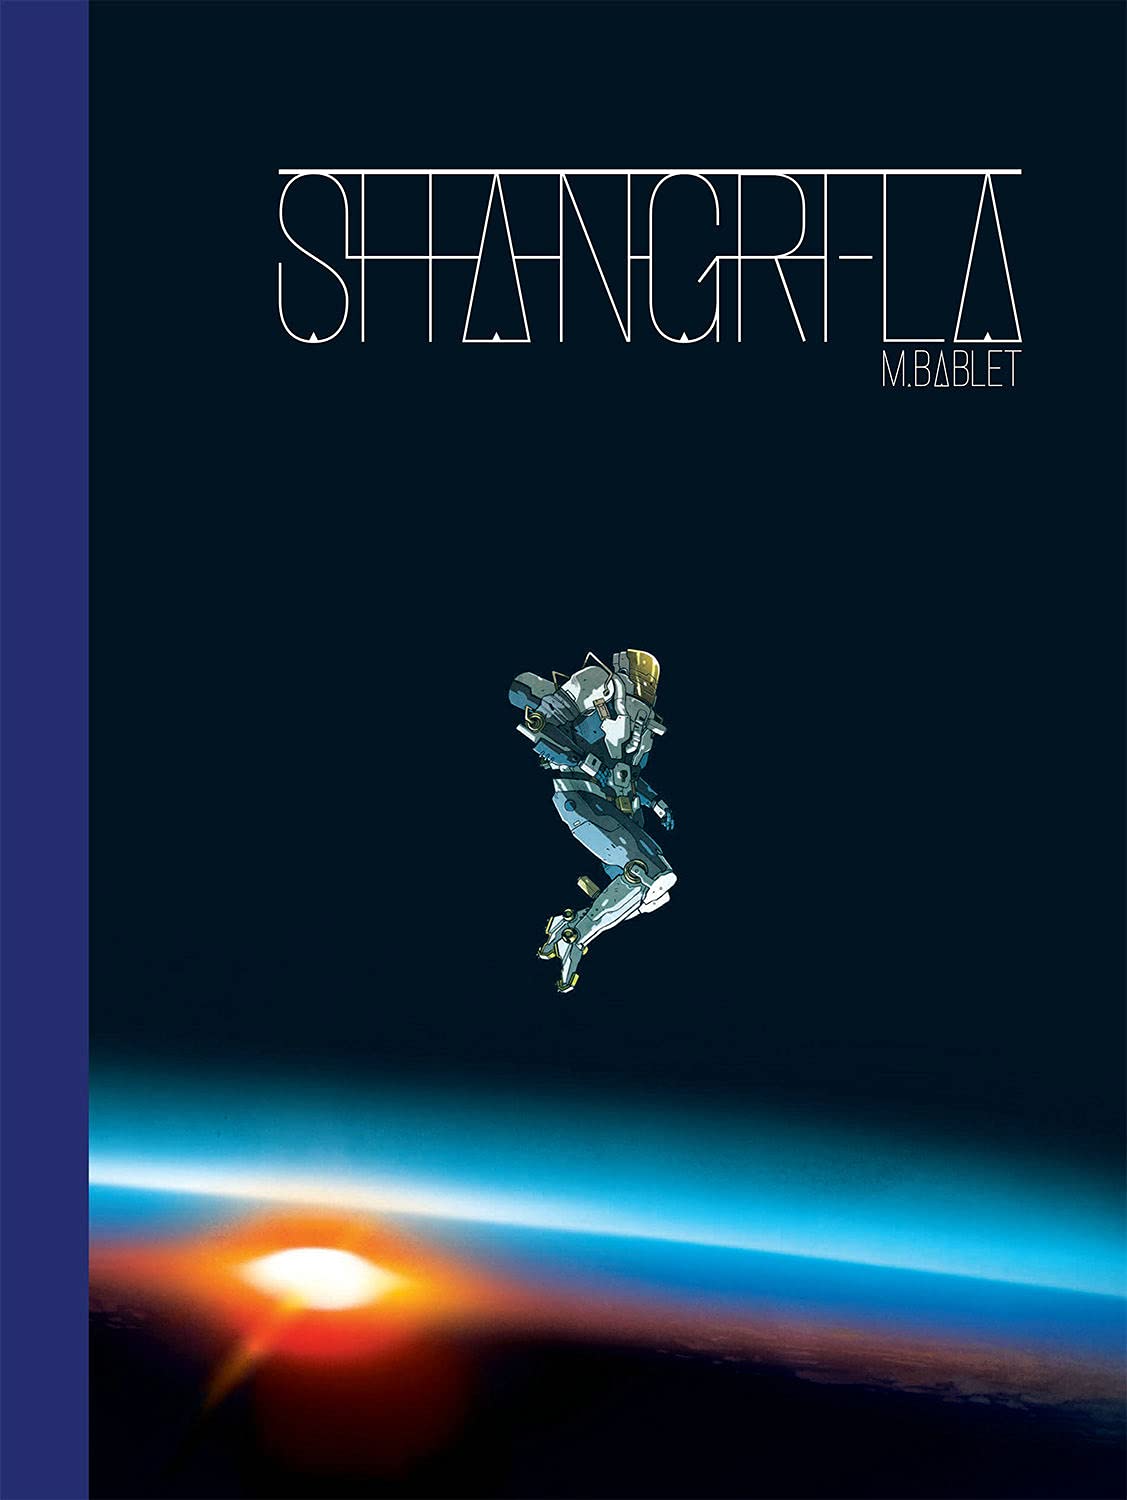 Shangri La Hardcover (Mature)